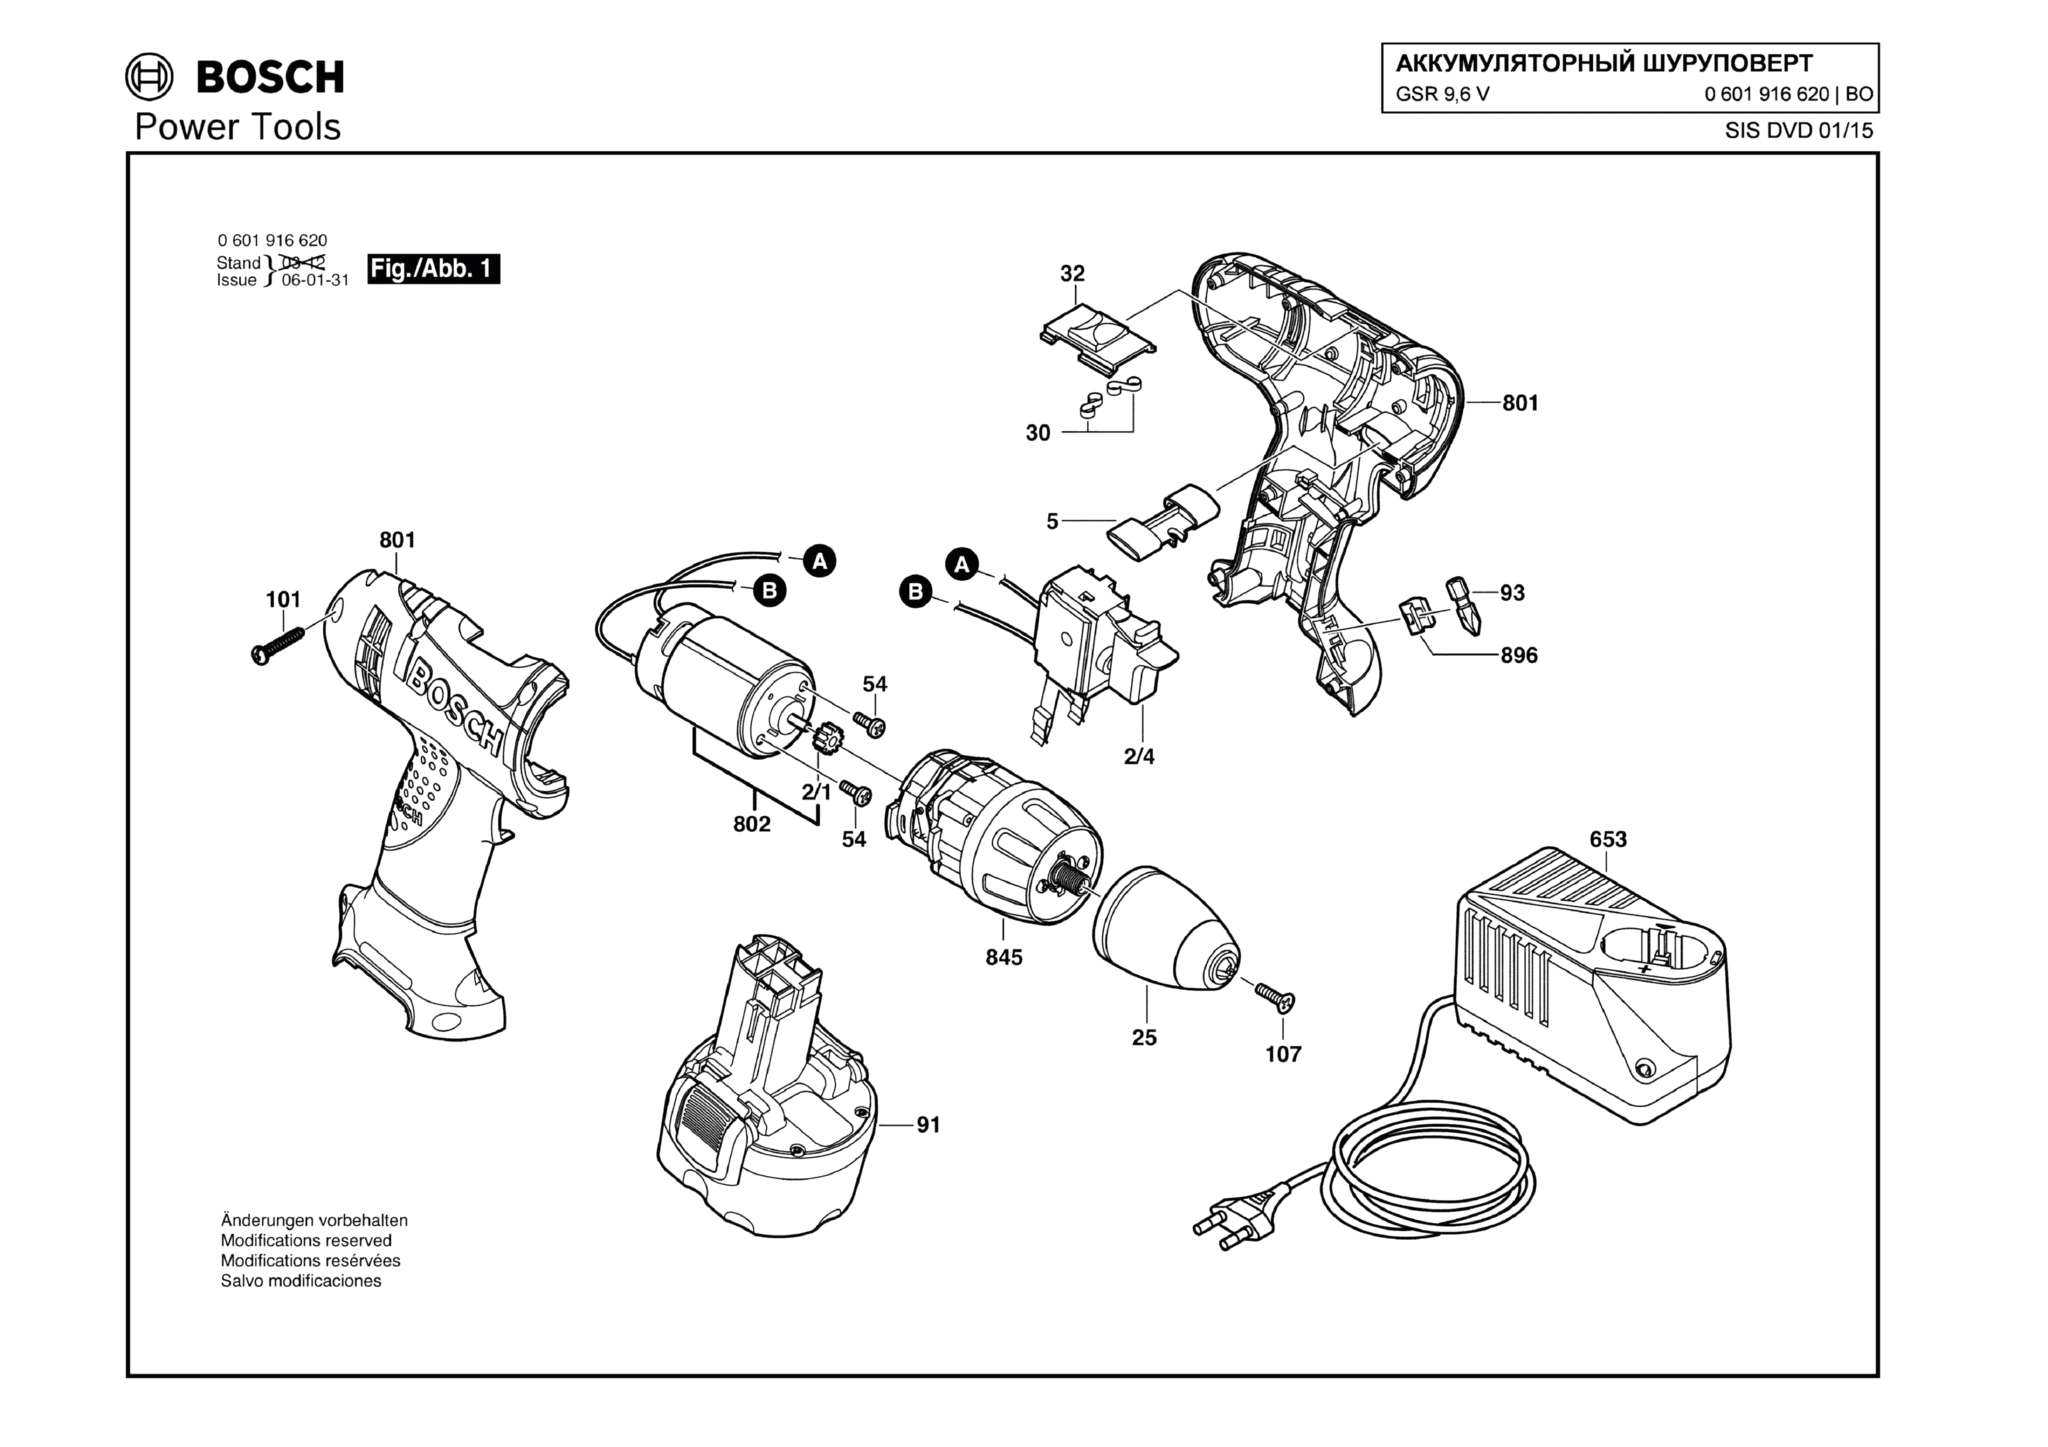 Запчасти, схема и деталировка Bosch GSR 9,6 V (ТИП 0601916620)